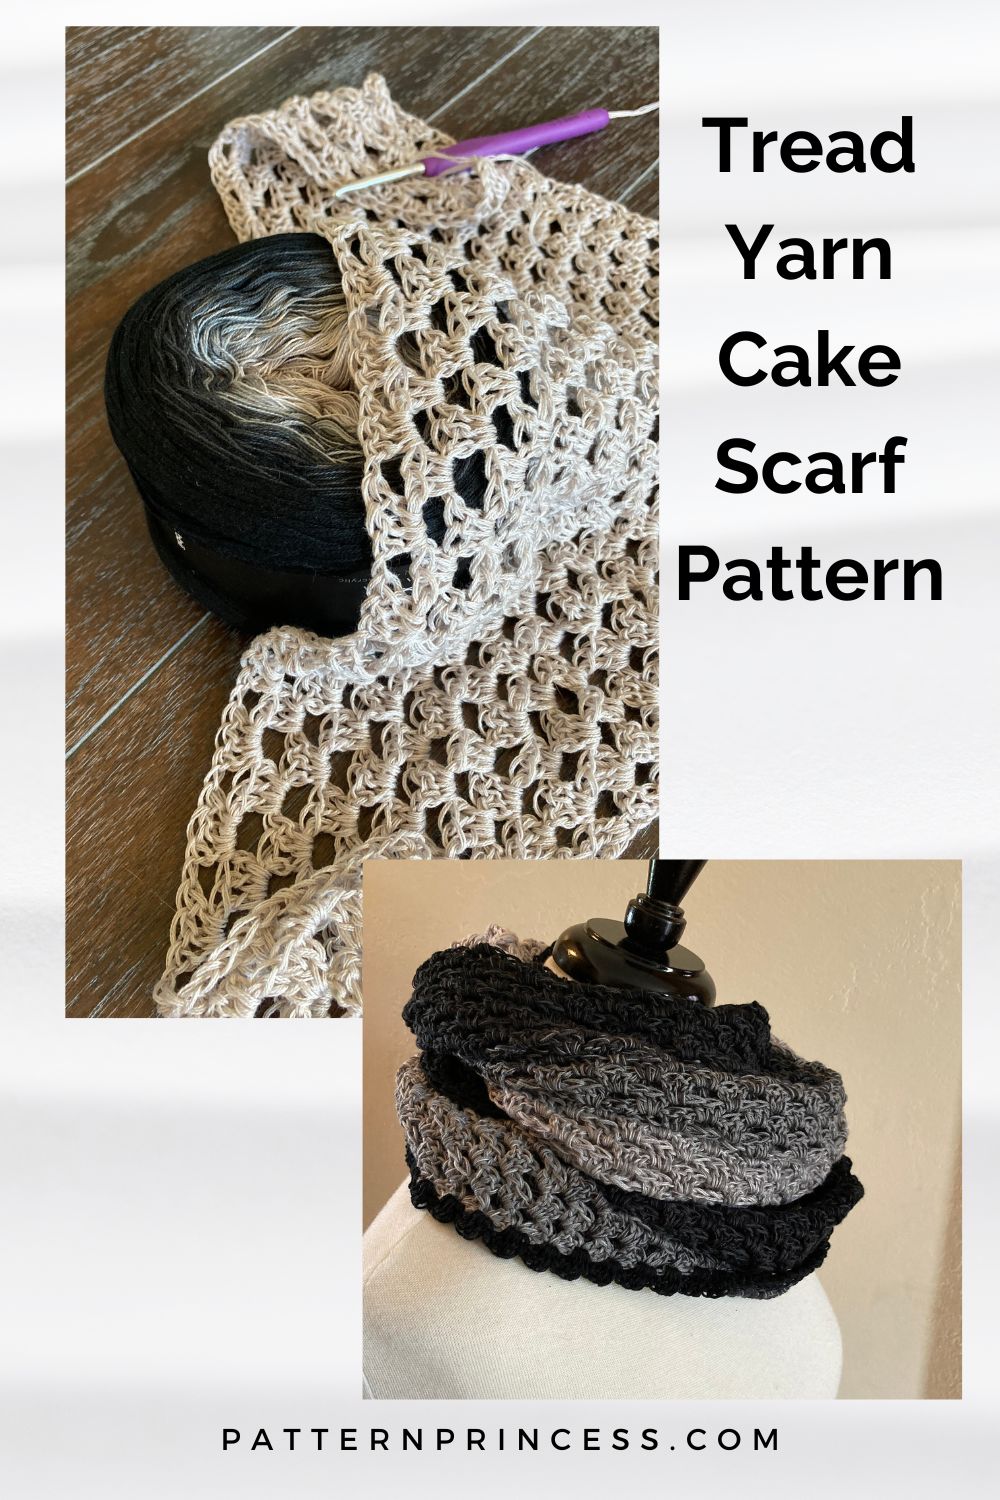 Tread Yarn Cake Scarf Pattern